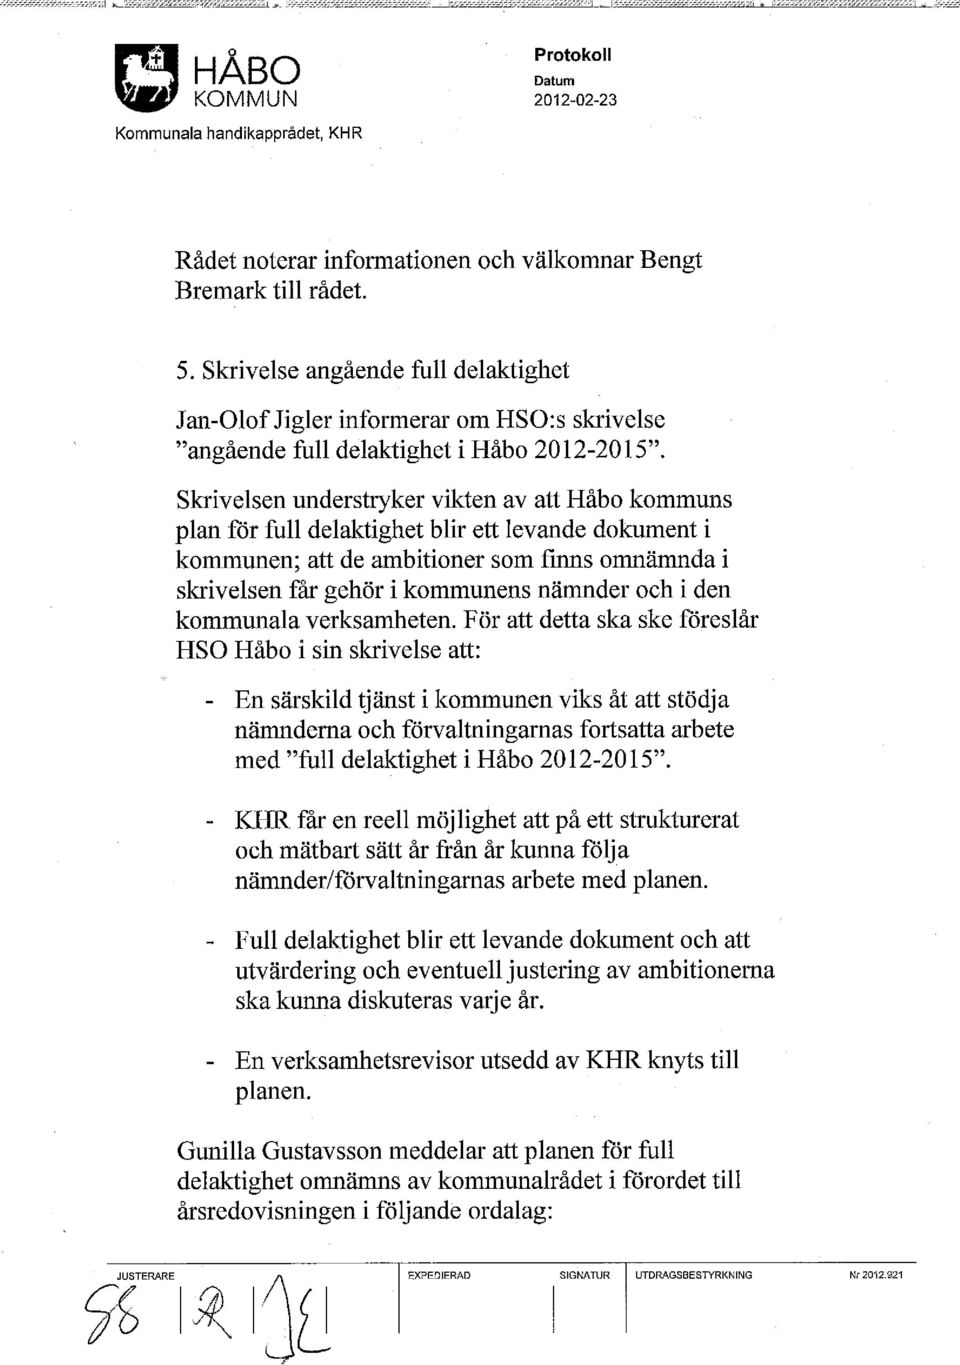 Skrivelsen understryker vikten av att Håbo kommuns plan för full delaktighet blir ett levande dokument i kommunen; att de ambitioner som finns omnämnda i skrivelsen får gehör i kommunens nämnder och